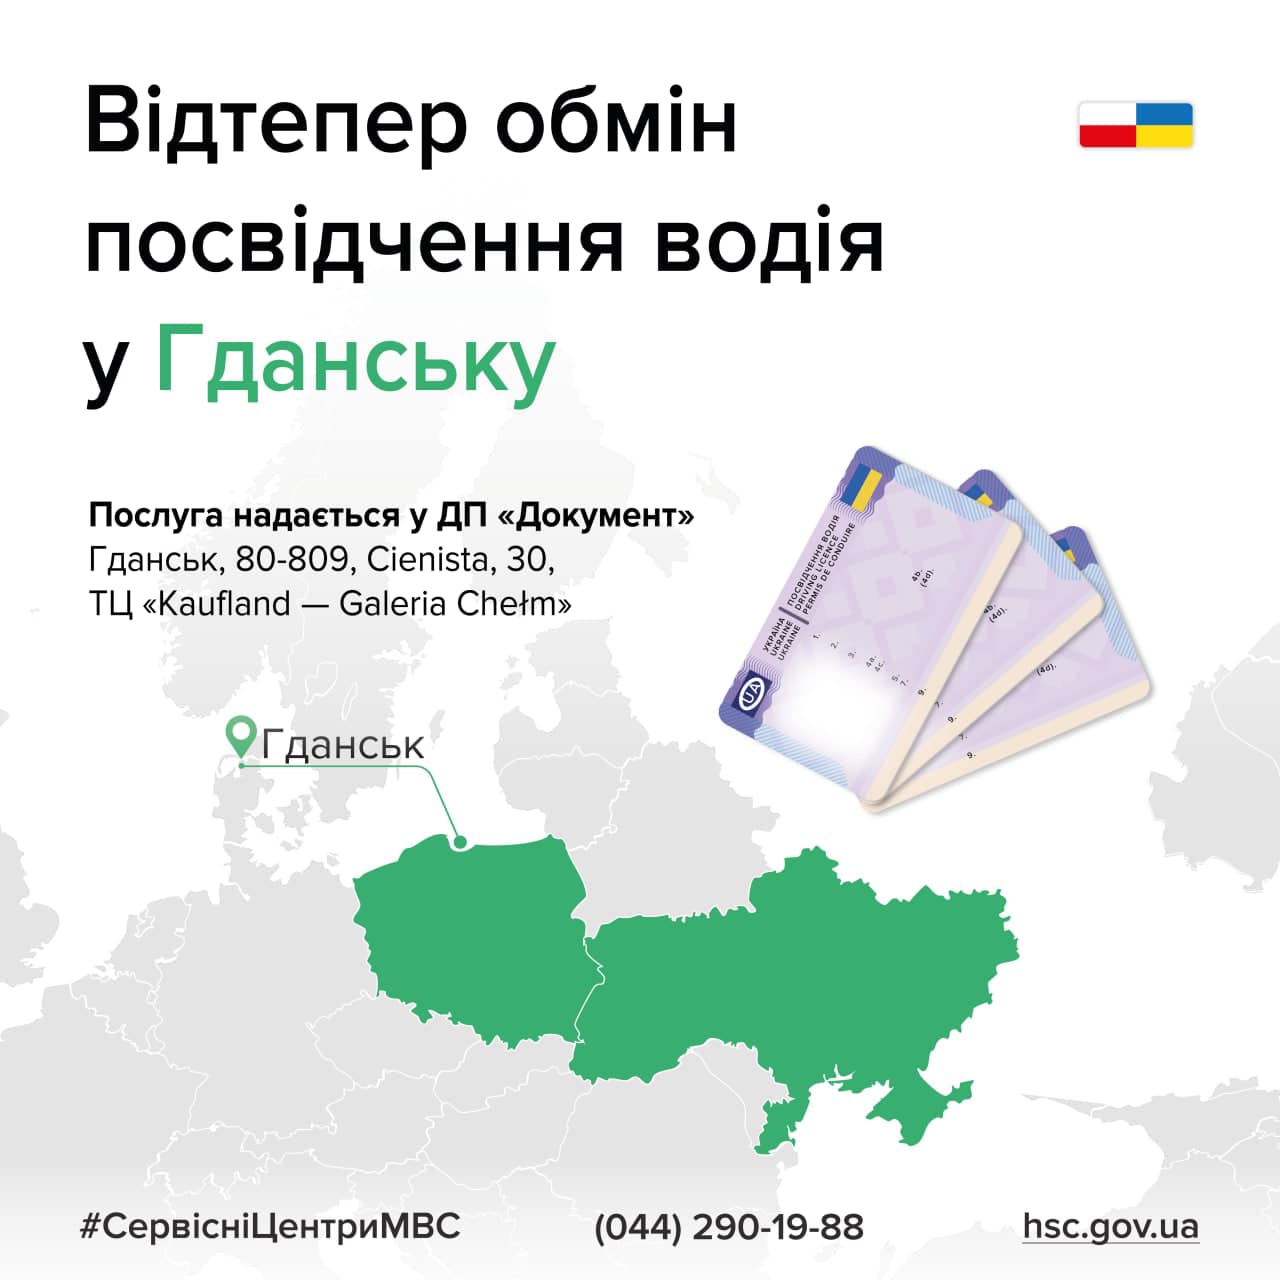 Украинцы теперь могут обменять водительское удостоверение в Гданьске